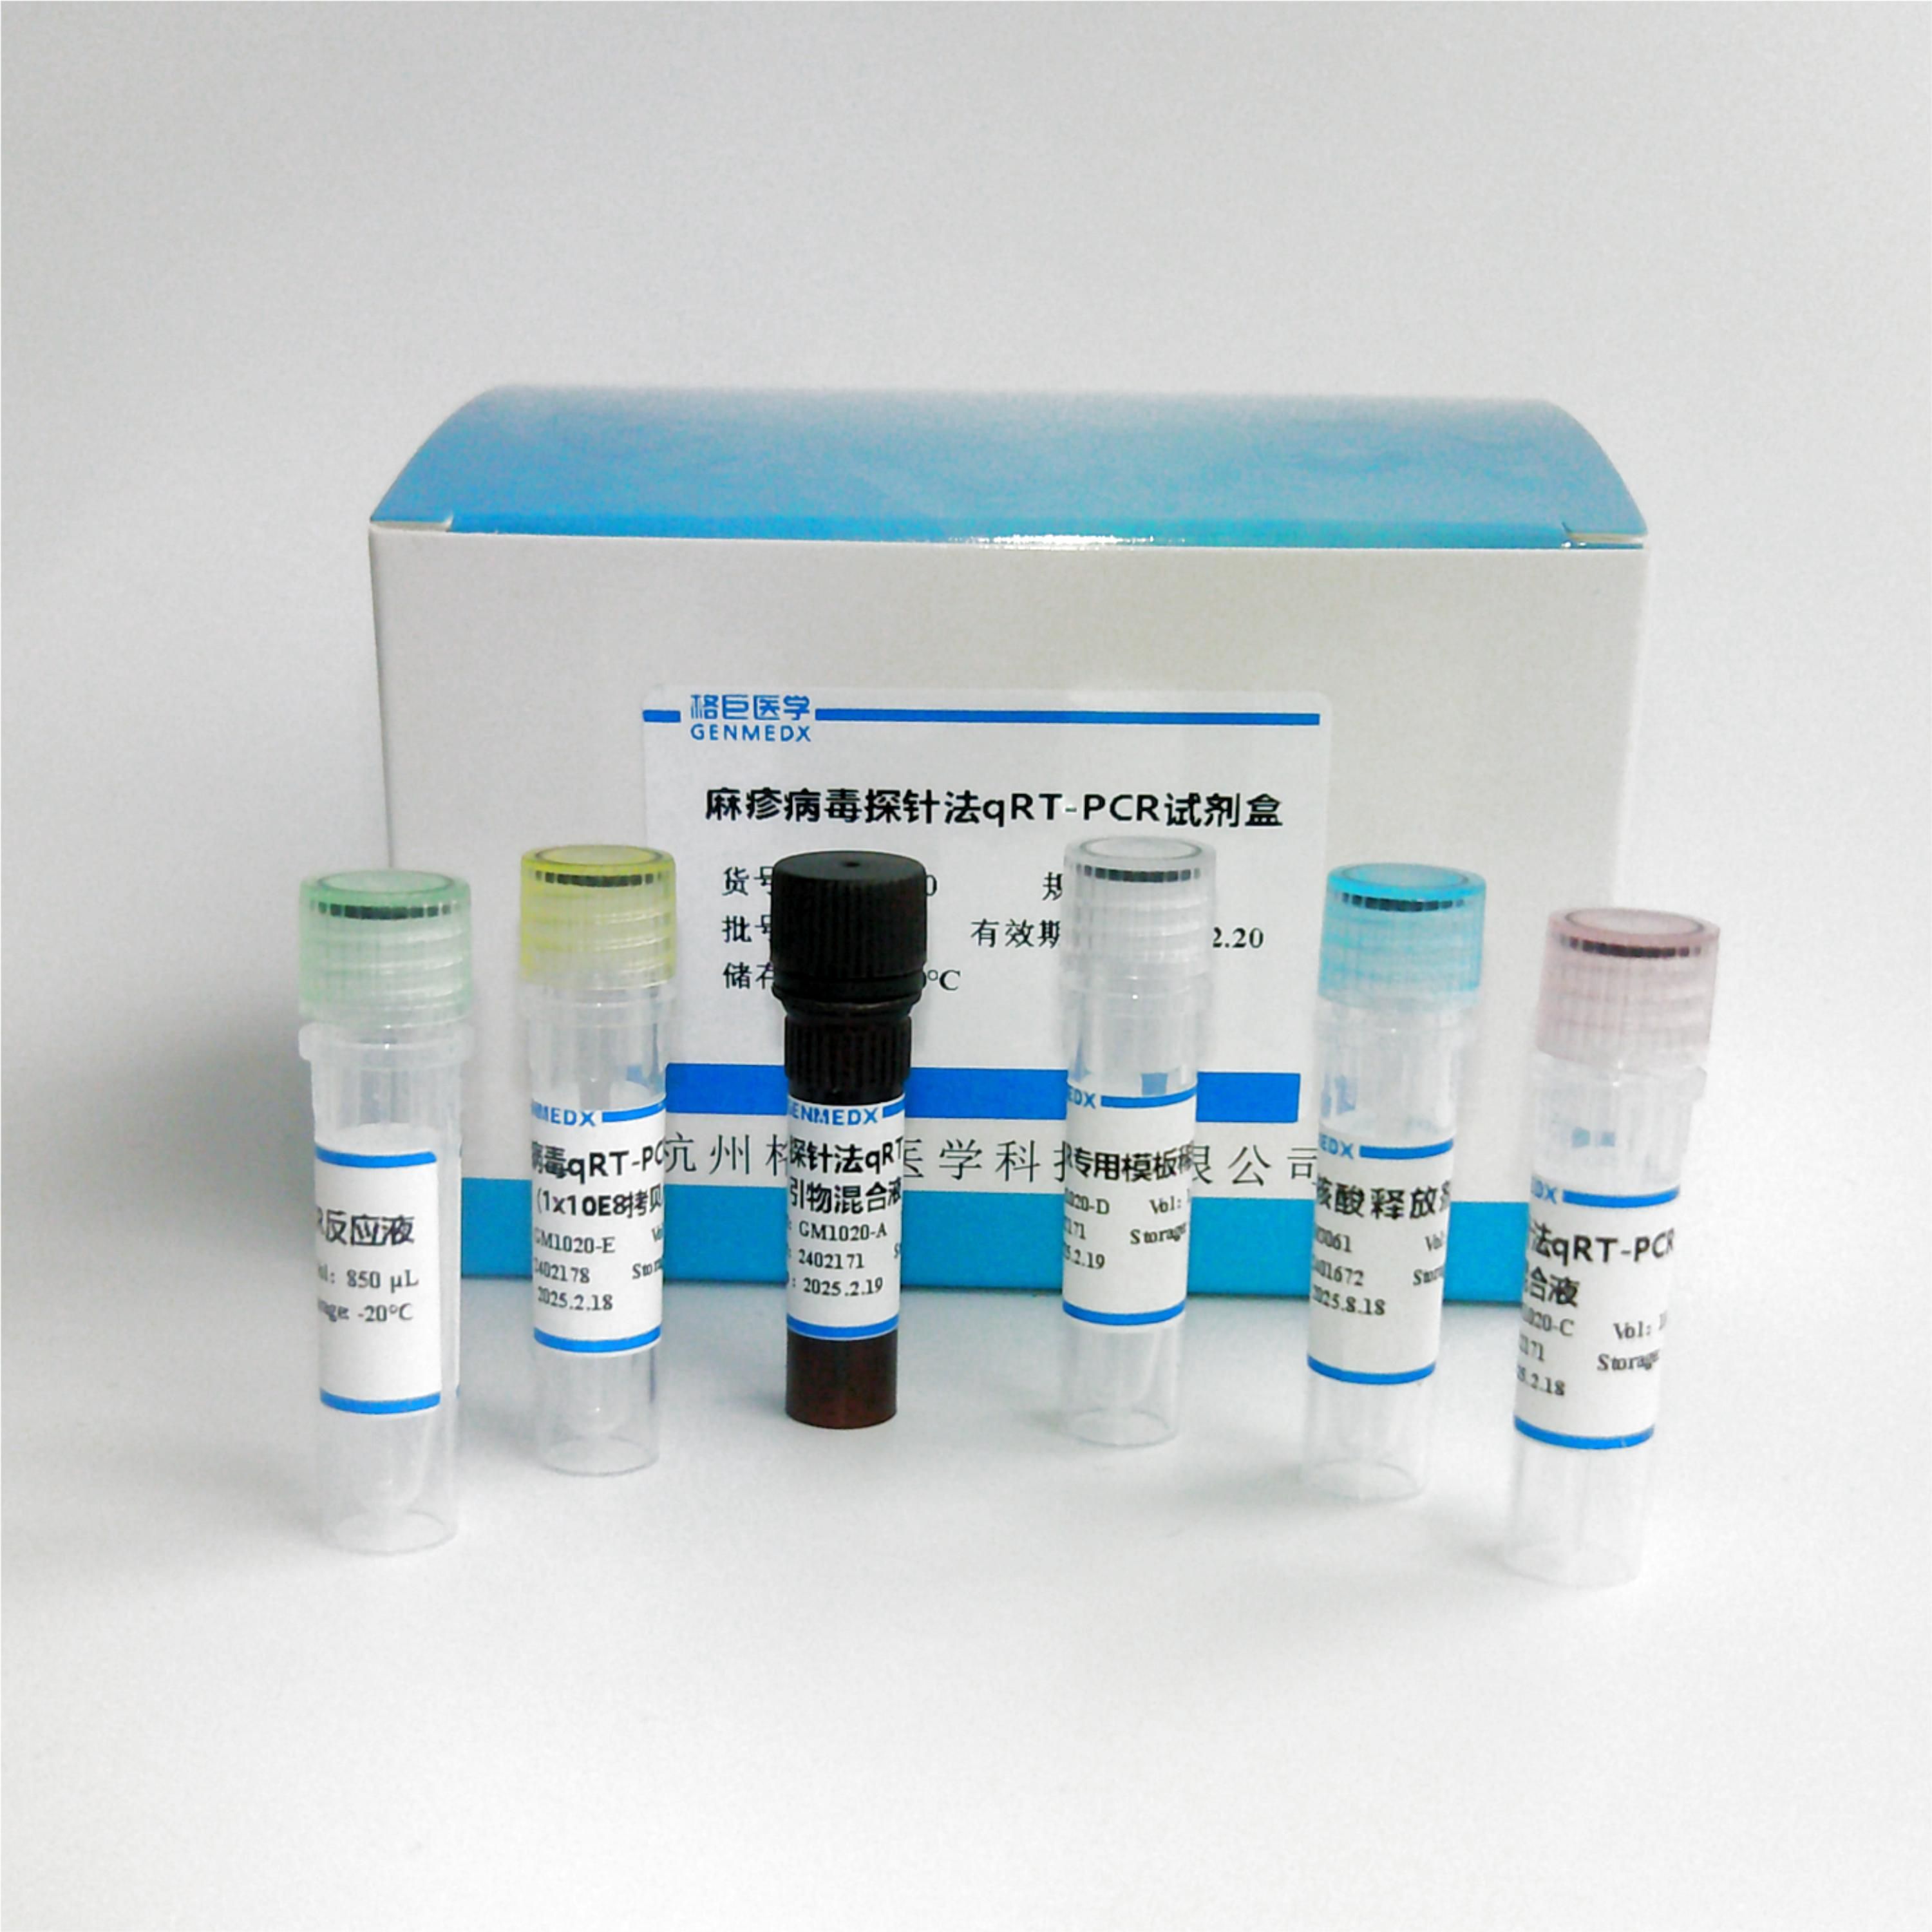 弓形虫探针法荧光定量PCR试剂盒